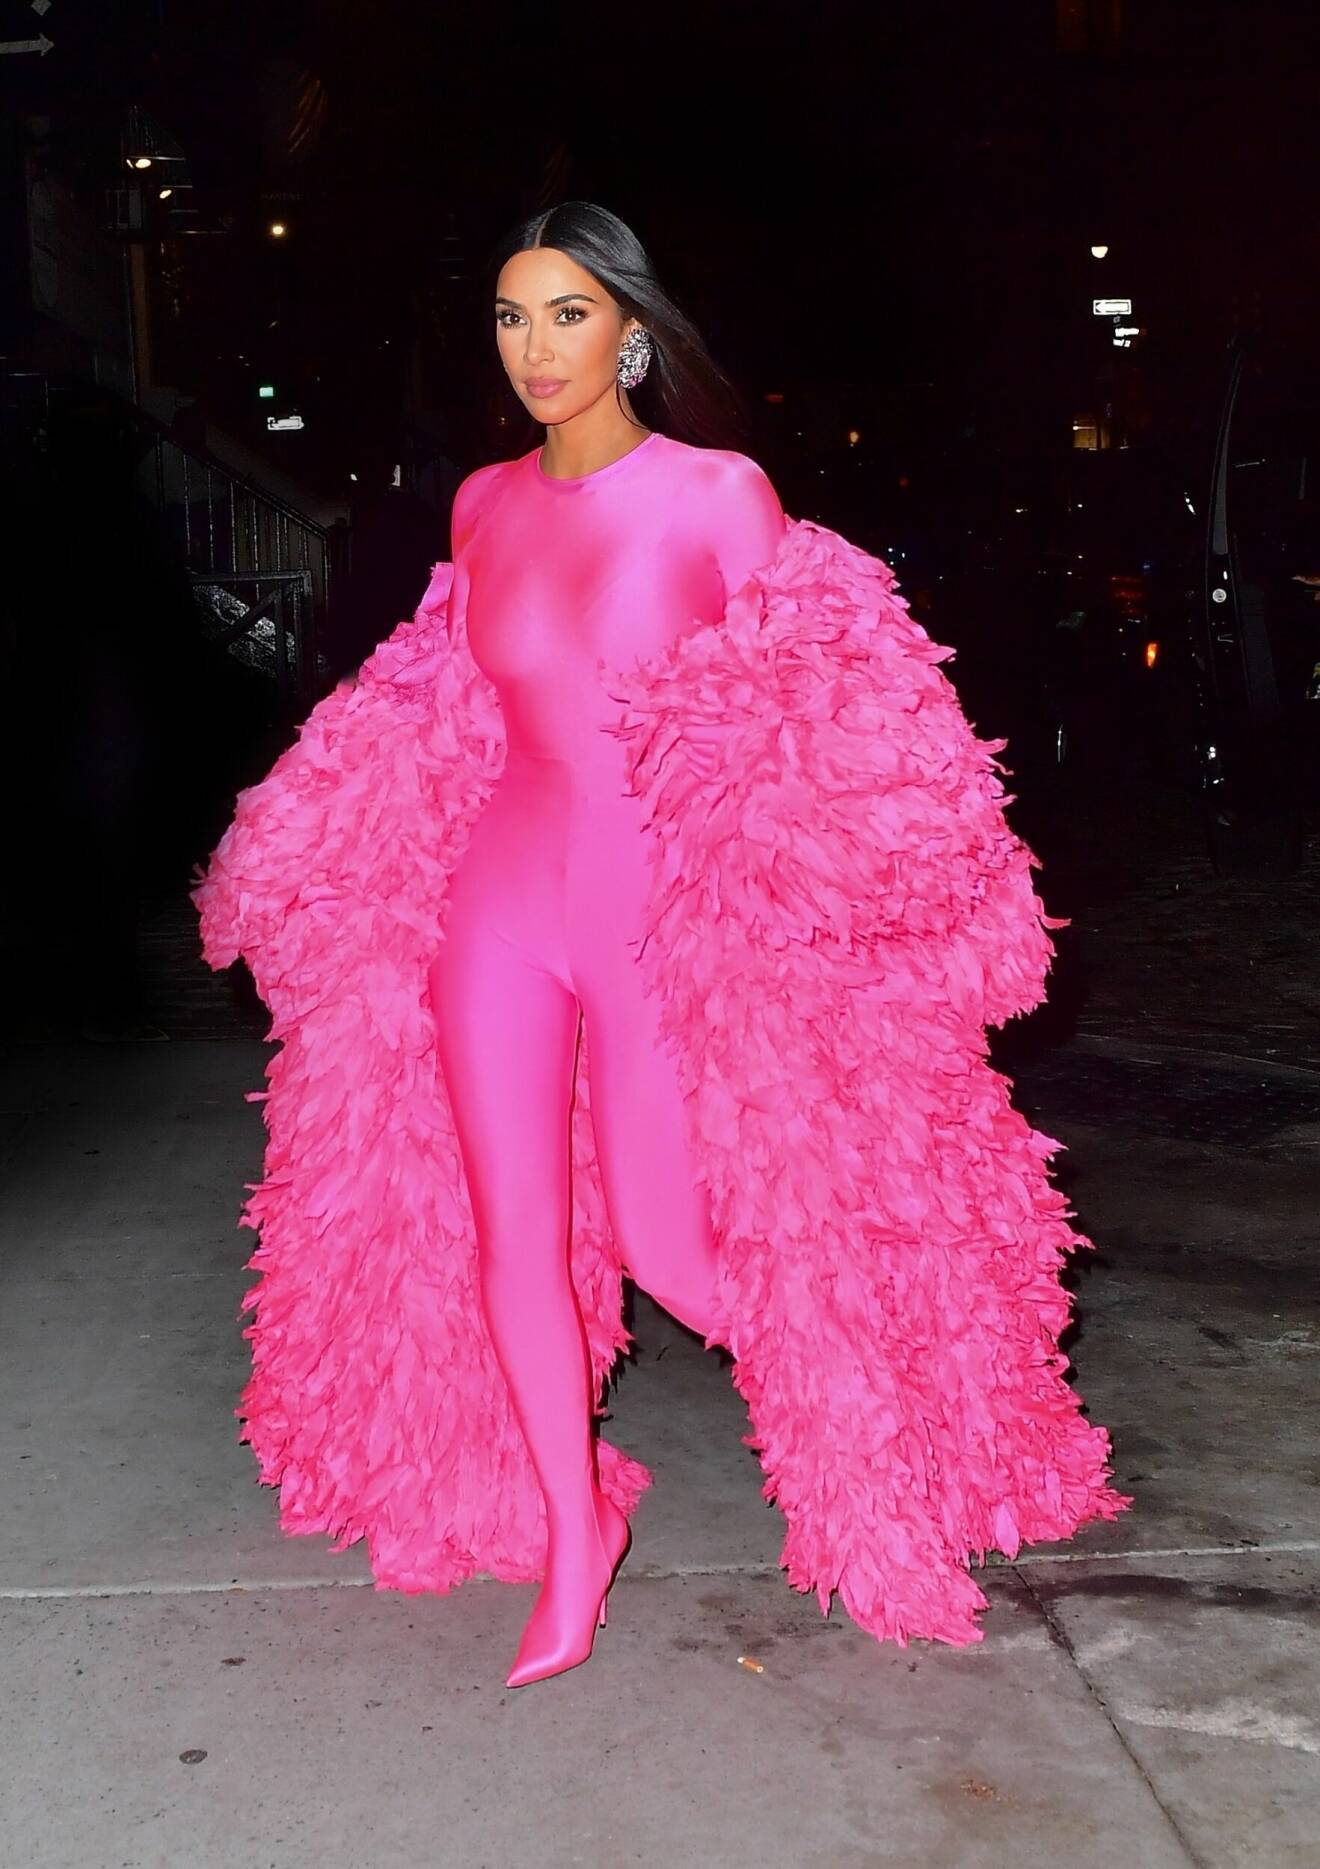 Kim Kardashian iklädd rosa look signerad Balenciaga på väg till efterfest efter att ha medverkat i SNL, i oktober 2021.